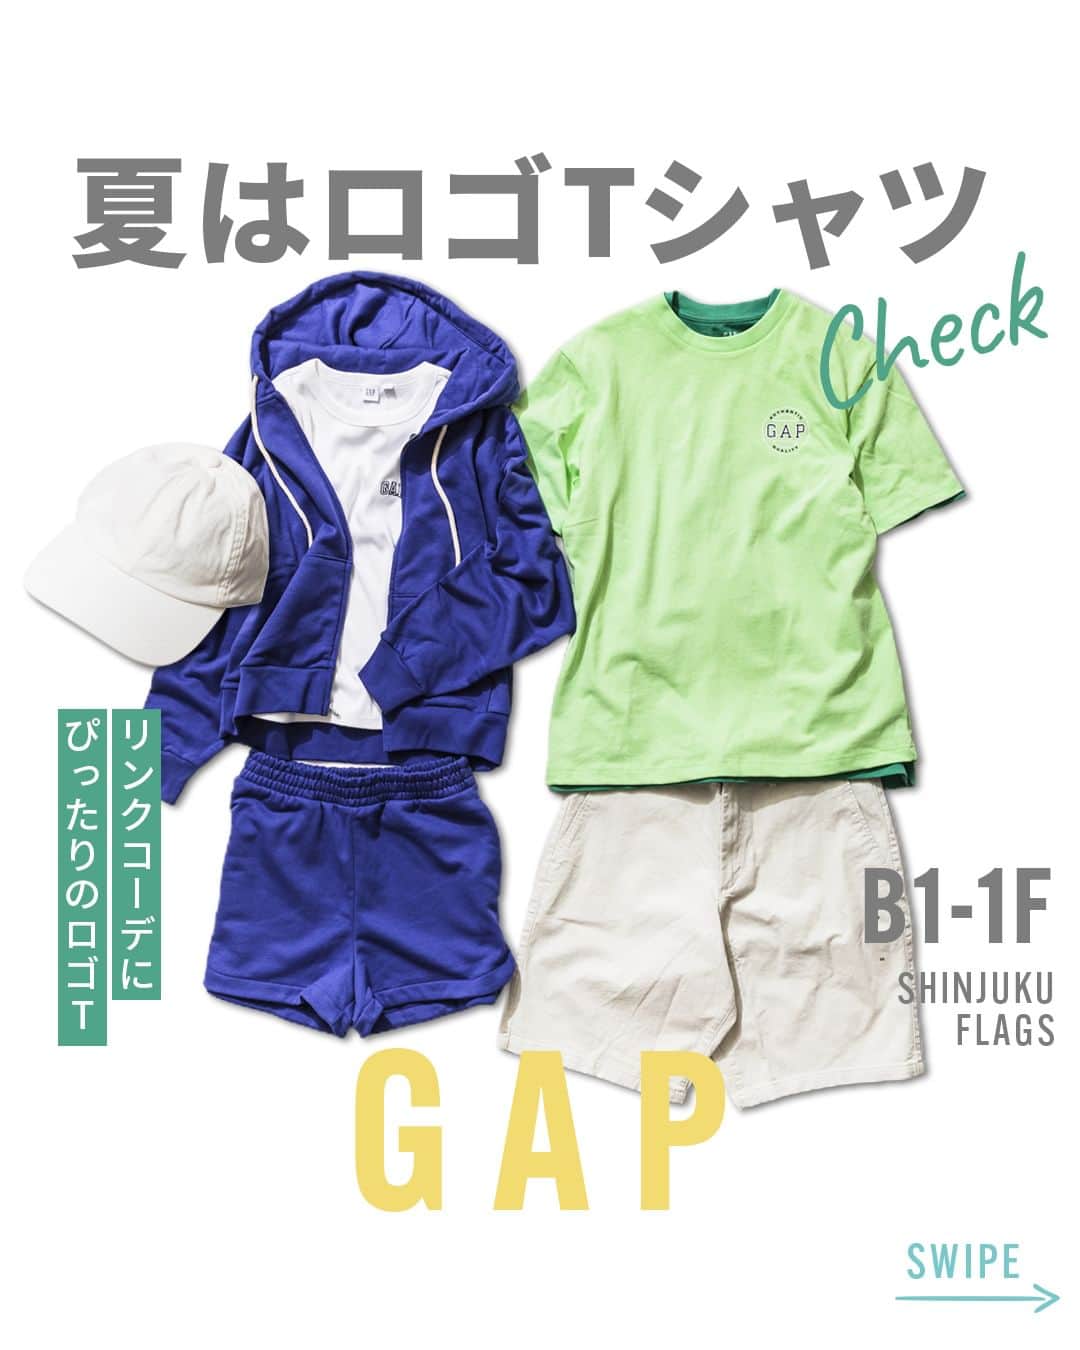 Flagsのインスタグラム：「今年もSNS話題のGAPロゴTシャツが登場！ショーツに組み合わせてこれからのアウトドアやイベントにも大活躍します！リンクコーデにも大人気のGAPTシャツが一押しです。  【 B1-1F/GAP 】 ◆Men ・スクエアロゴTシャツ　¥3,990 ・ネオンGAPロゴTシャツ　¥3,990 ・10インチカーキショーツ　¥4,990 ・キャップ　¥1,990 ◆Woman ・リブミニロゴTシャツ　¥3,990 ・フレンチテリーフルジップパーカー　¥7,990 ・ショーツ　¥4,990  #新宿flags #新宿フラッグス #shinjukuflags #フラッグス #新宿ショッピング #gap #ギャップ #gapコーデ #ロゴt　#ロゴTシャツ #フレンチテリー #ジップパーカー #ファッションコーデ #カジュアルコーデ #カジュアルファッション #大人カジュアルコーデ #パーカーコーデ #リラックスコーデ #キャップコーデ #シンプルコーデ #シンプルファッション #ワンマイルウェア #大人シンプル #アウトドアコーデ #イベントコーデ #フェスコーデ #リンクコーデ #夏コーデ　#アウトドアファッション #夏ファッション」